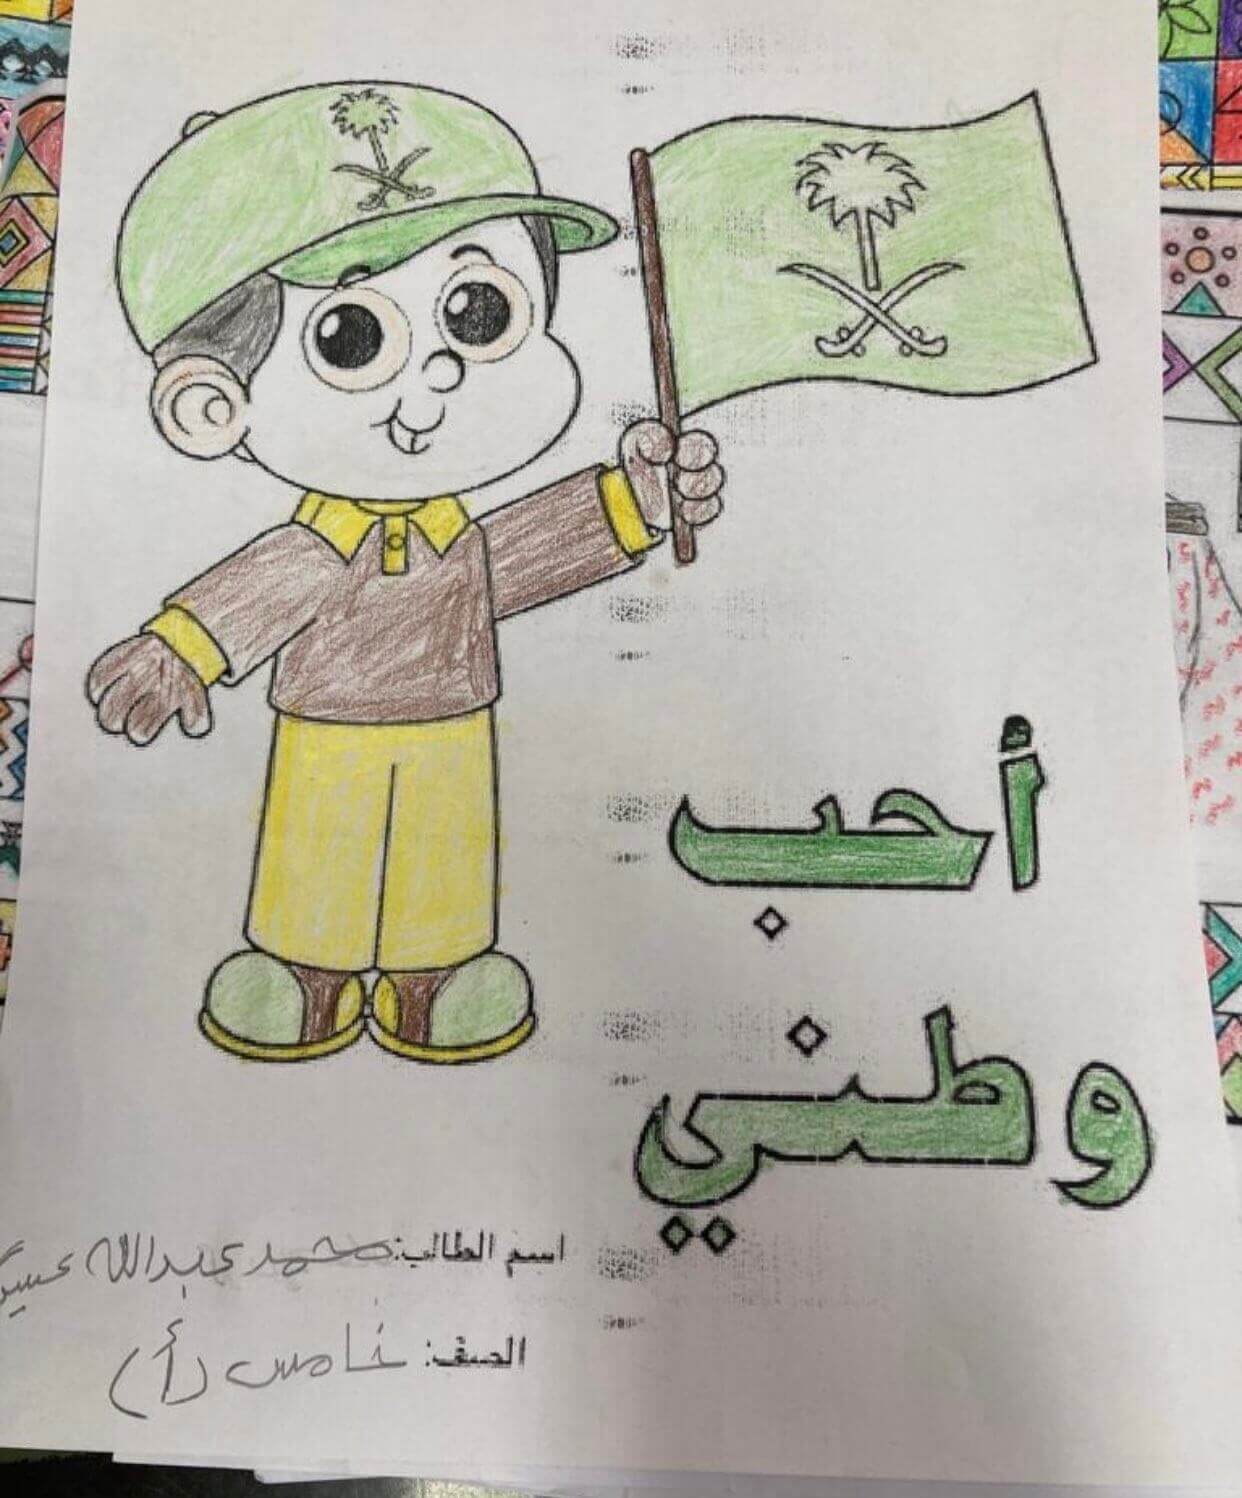 صورة مميزة لرسمه احب وطني مع طفل يحمل علم السعودية في يوم التأسيس للمملكة